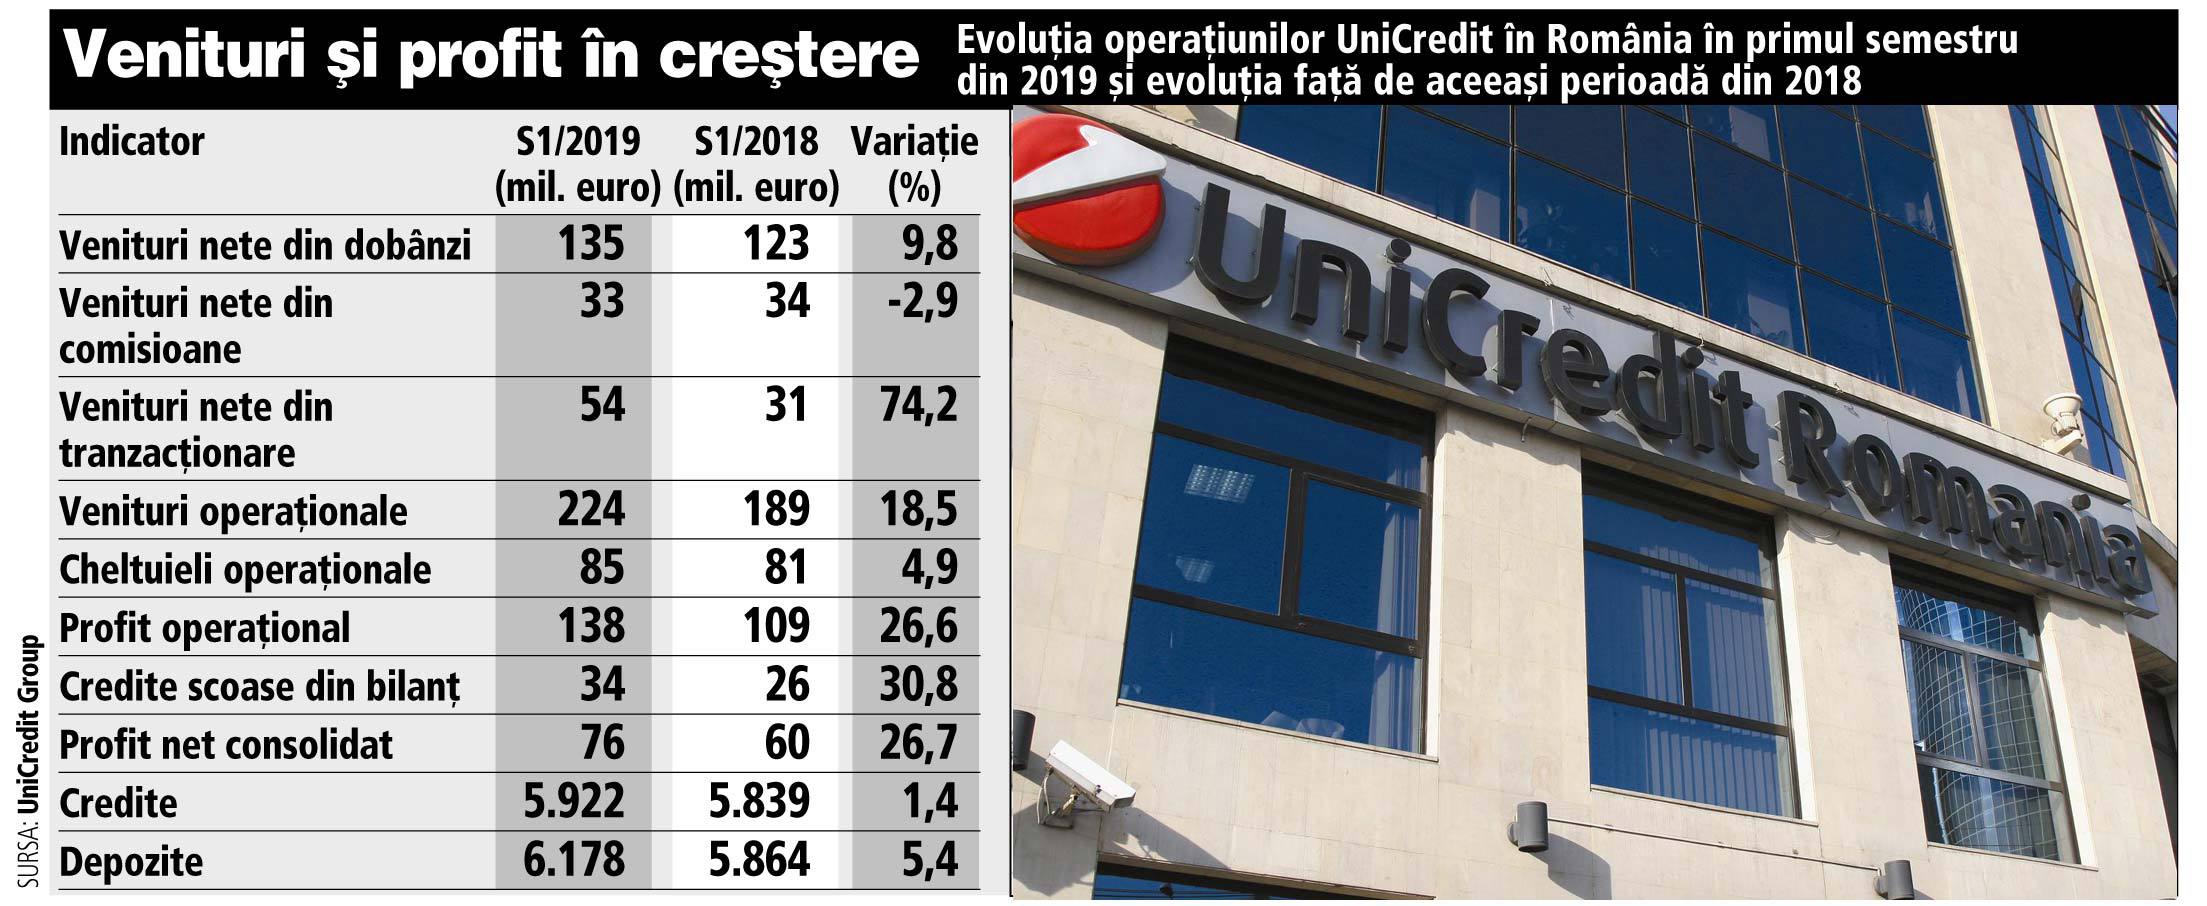 UniCredit, cel mai mare grup bancar din Italia, şi-a majorat cu 27% profitul din operaţiunile din România în S1/2019, obţinând 76 mil. euro